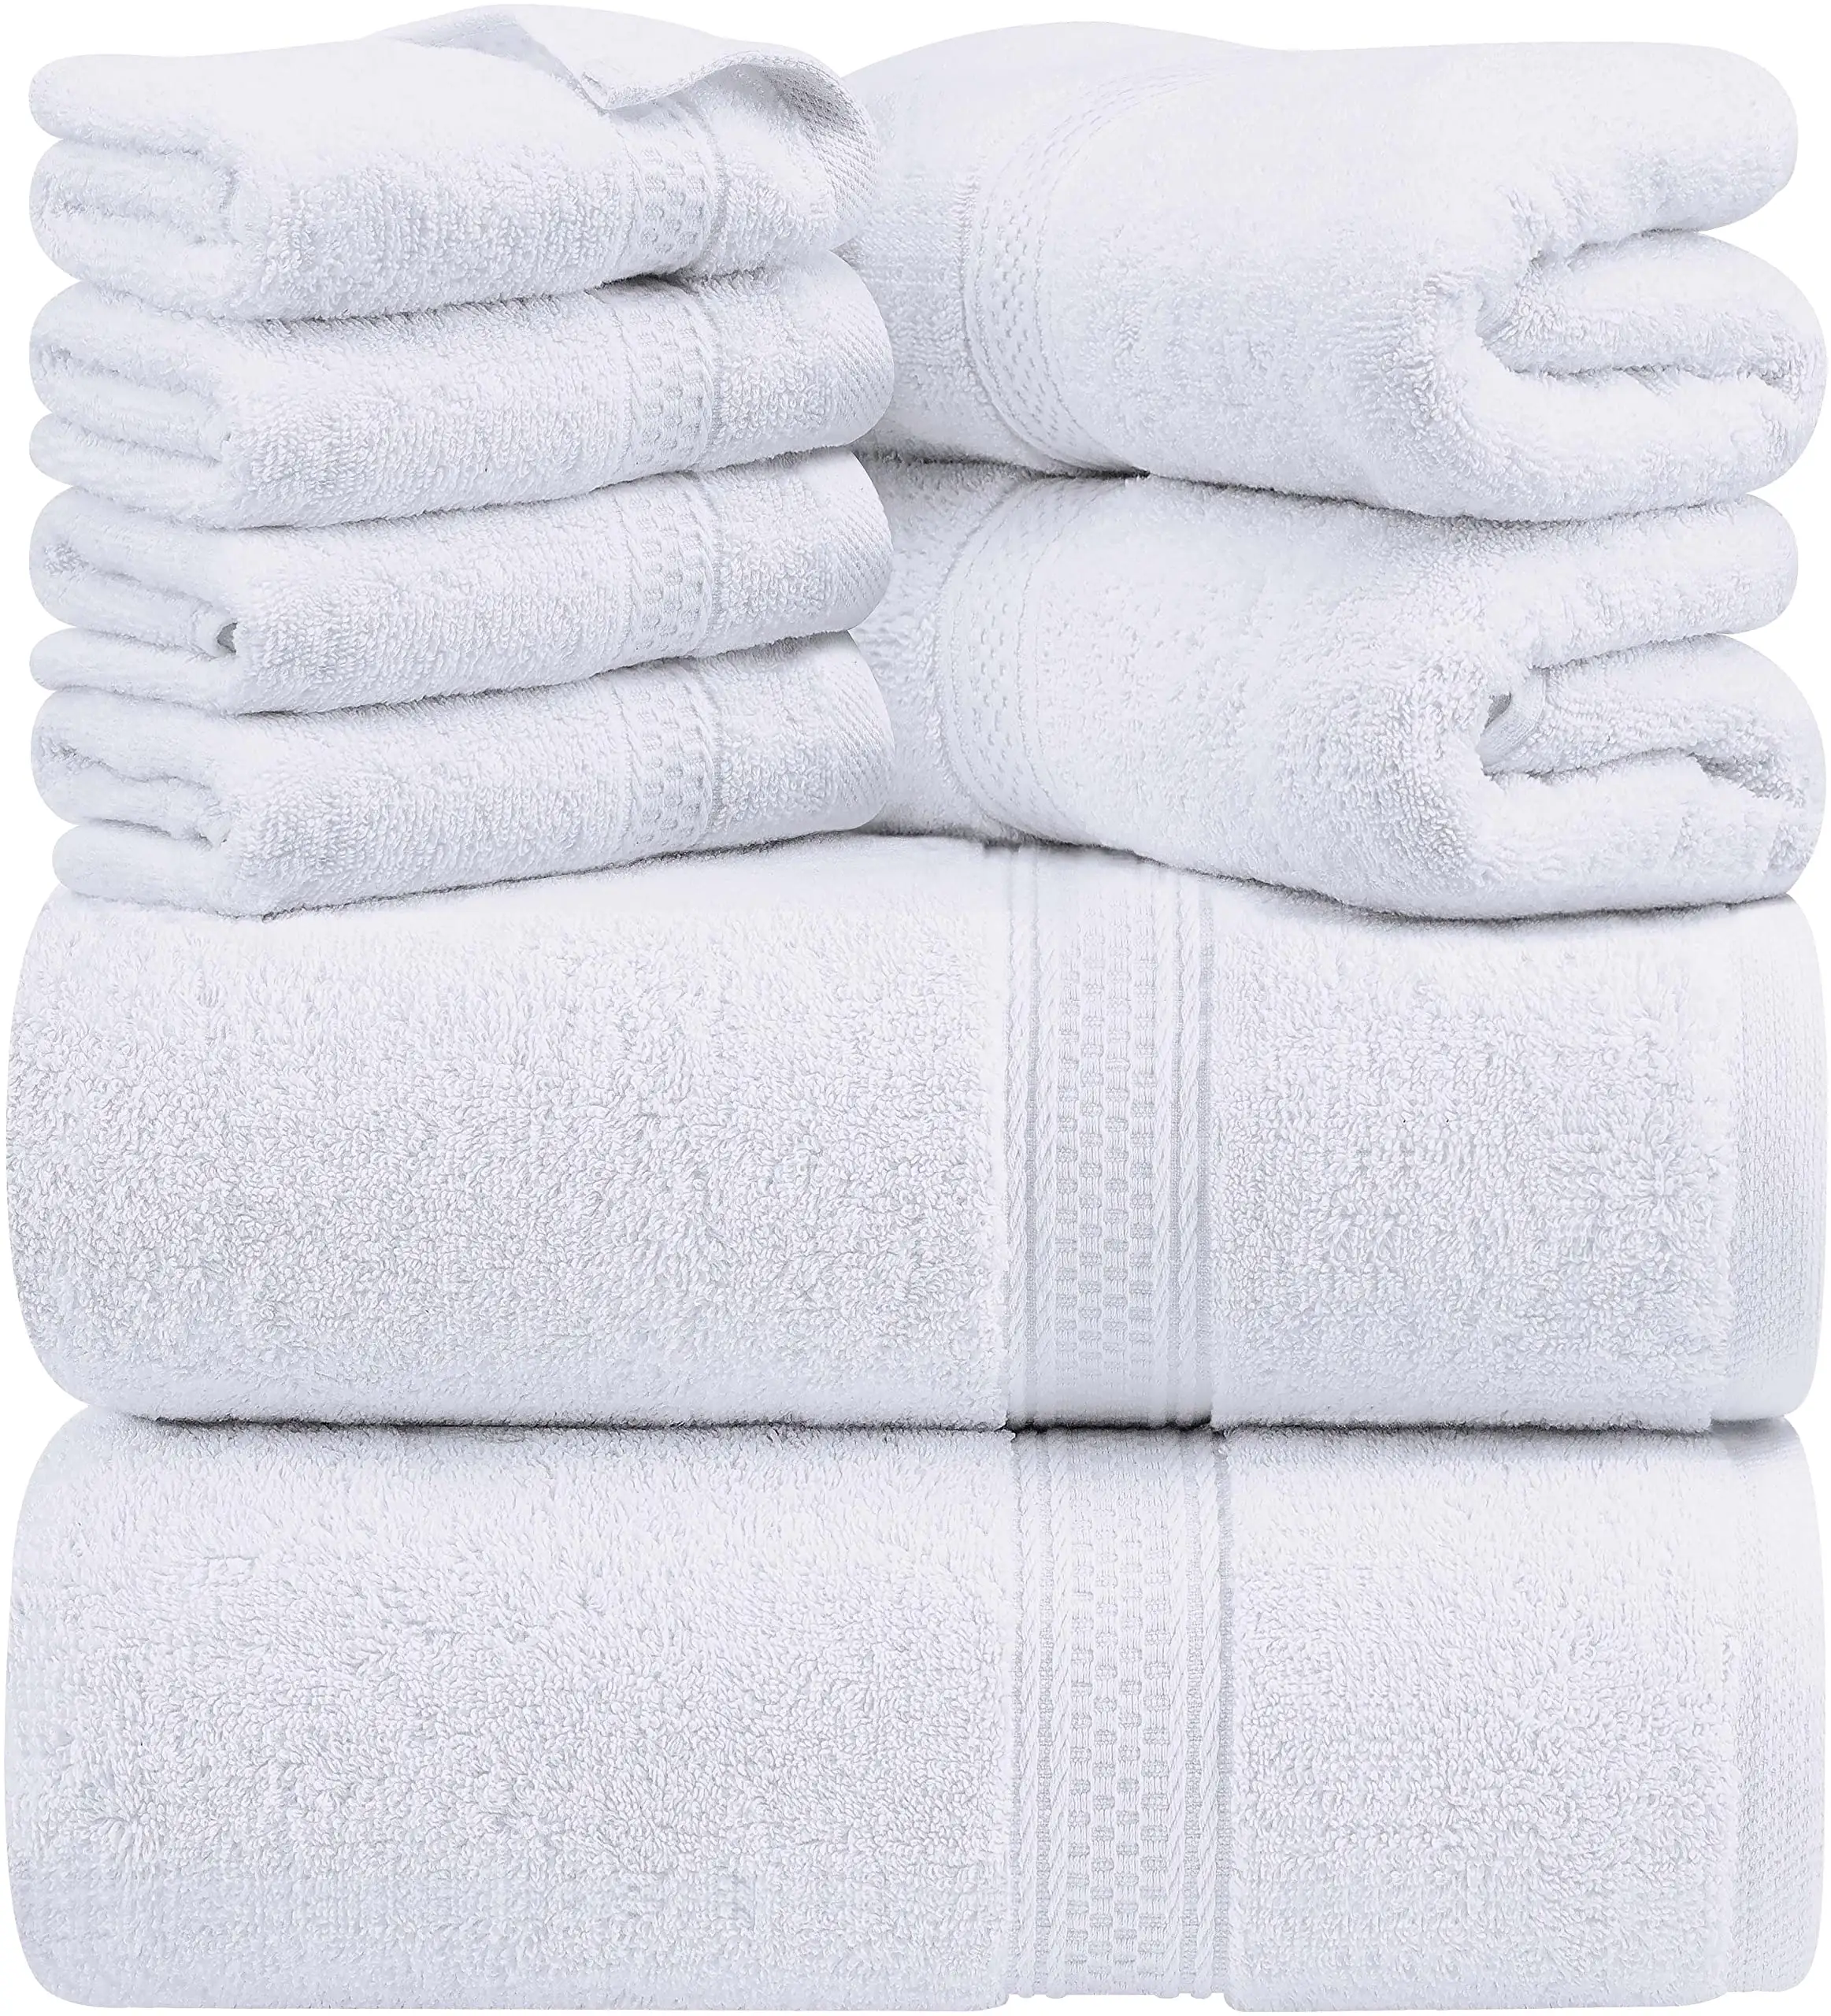 Premium 100% halka bükülmüş pamuk banyo havlusu yüksek emici ev duş banyo havlusu hafif kolay bakım banyo havlusu takımı